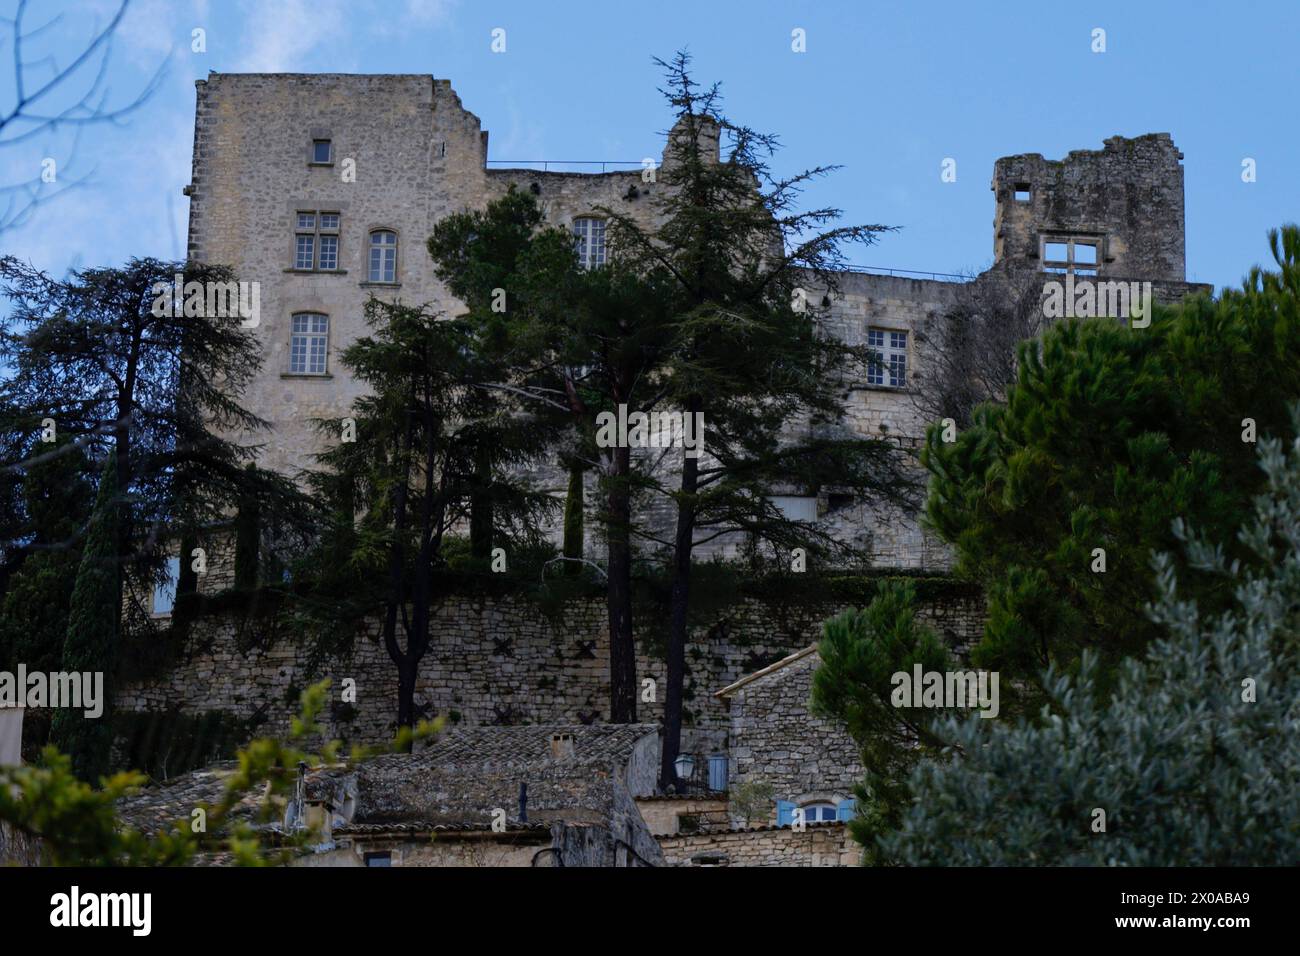 La rovina del Marchese de Sade castello che domina il borgo medioevale Lacoste, Vaucluse, Provence-Alpes-Côte d'Azur, Provenza, Francia Foto Stock